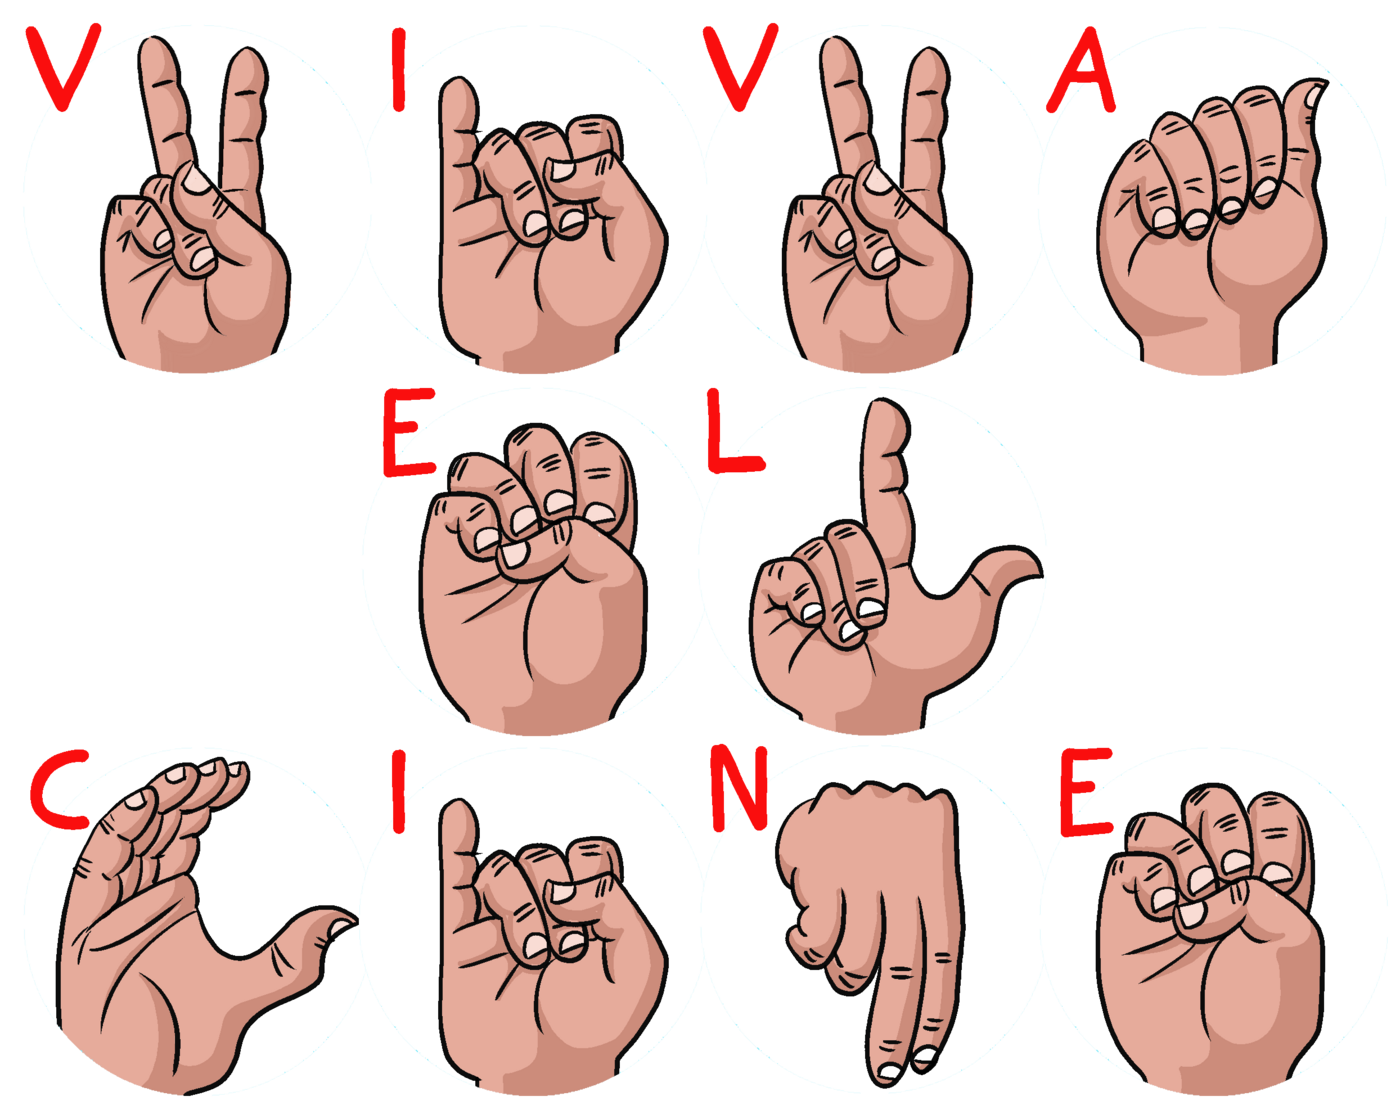 VIVA EL CINE en lengua de señas